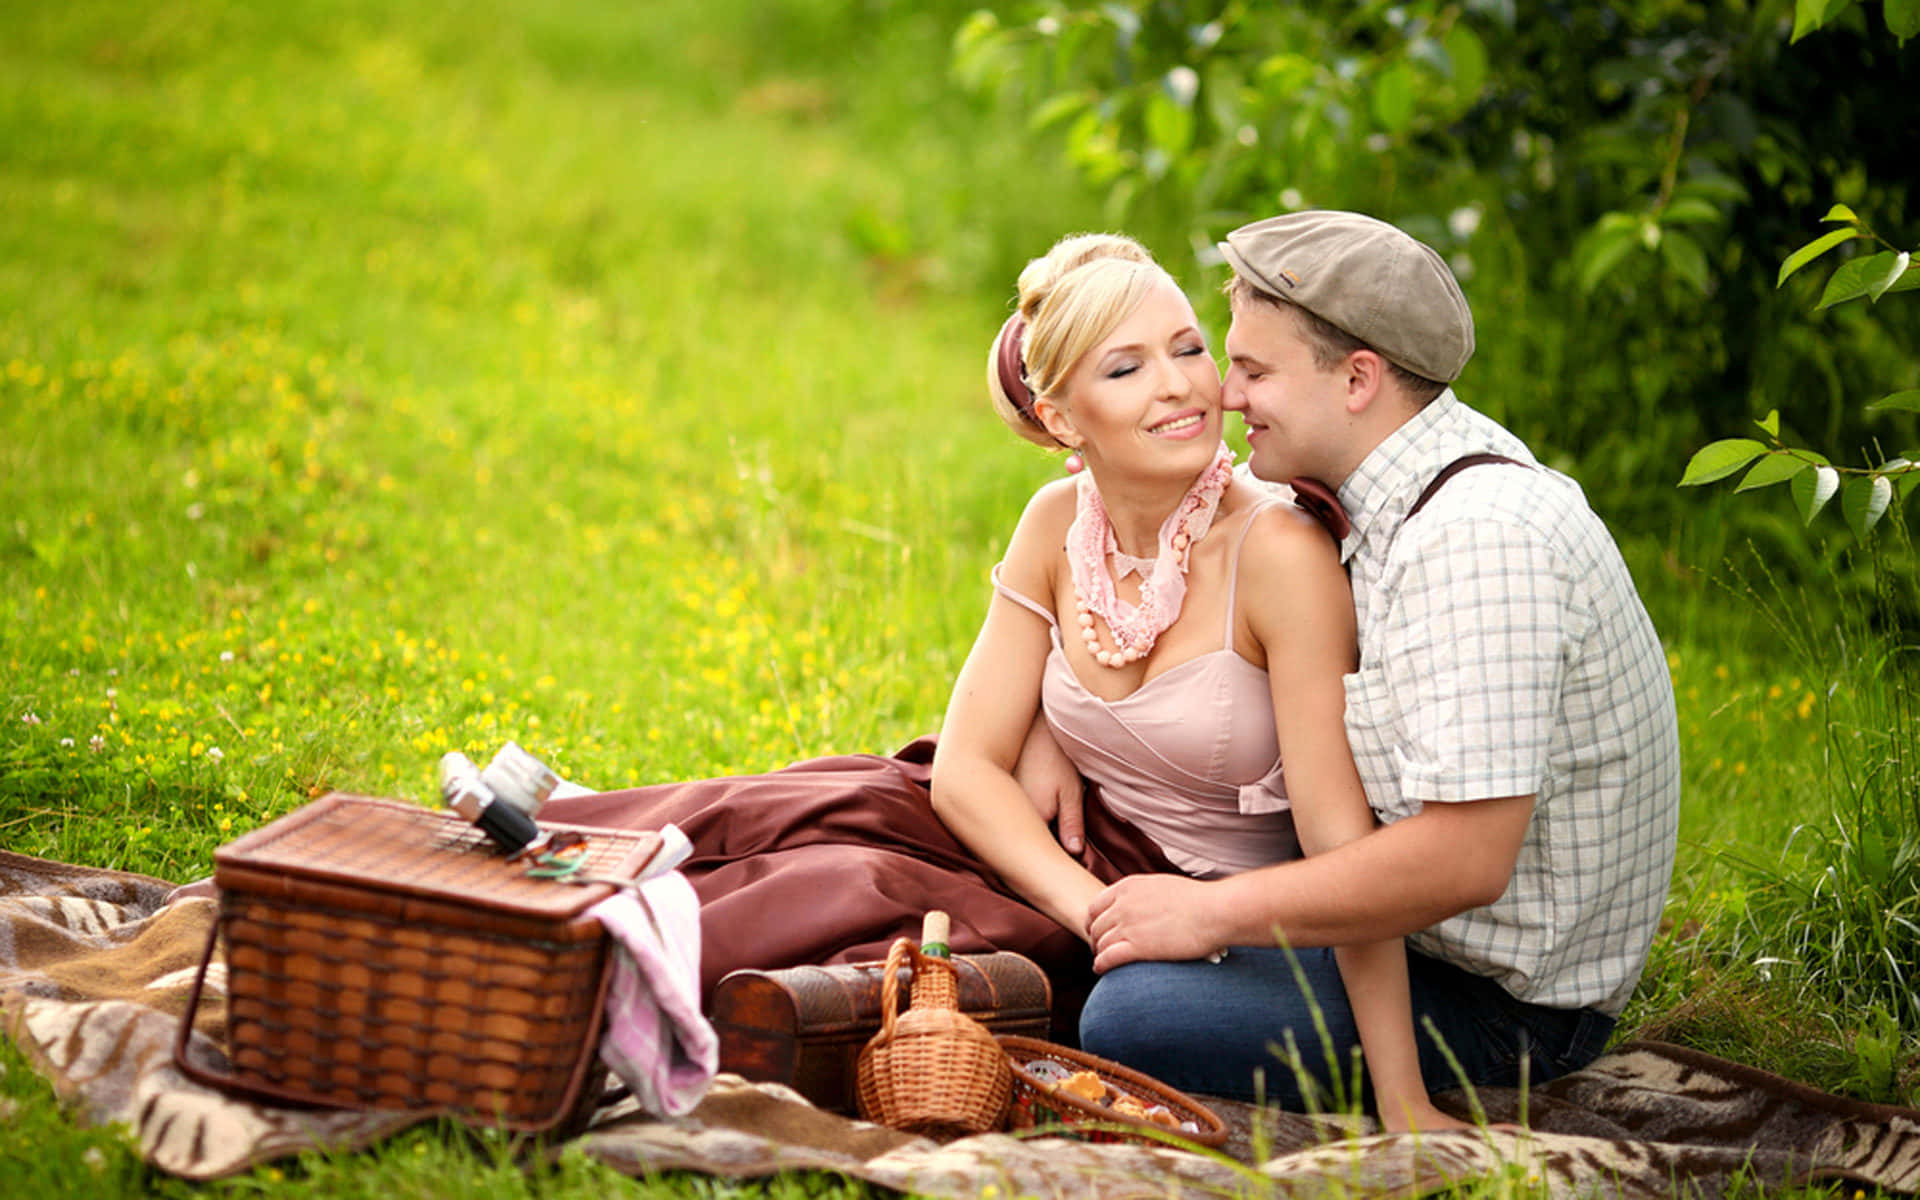 Пикник люба. Фотосессия пикник на природе. Парень с девушкой на пикнике. Романтичный пикник на природе. Фотосессия пикник пара.